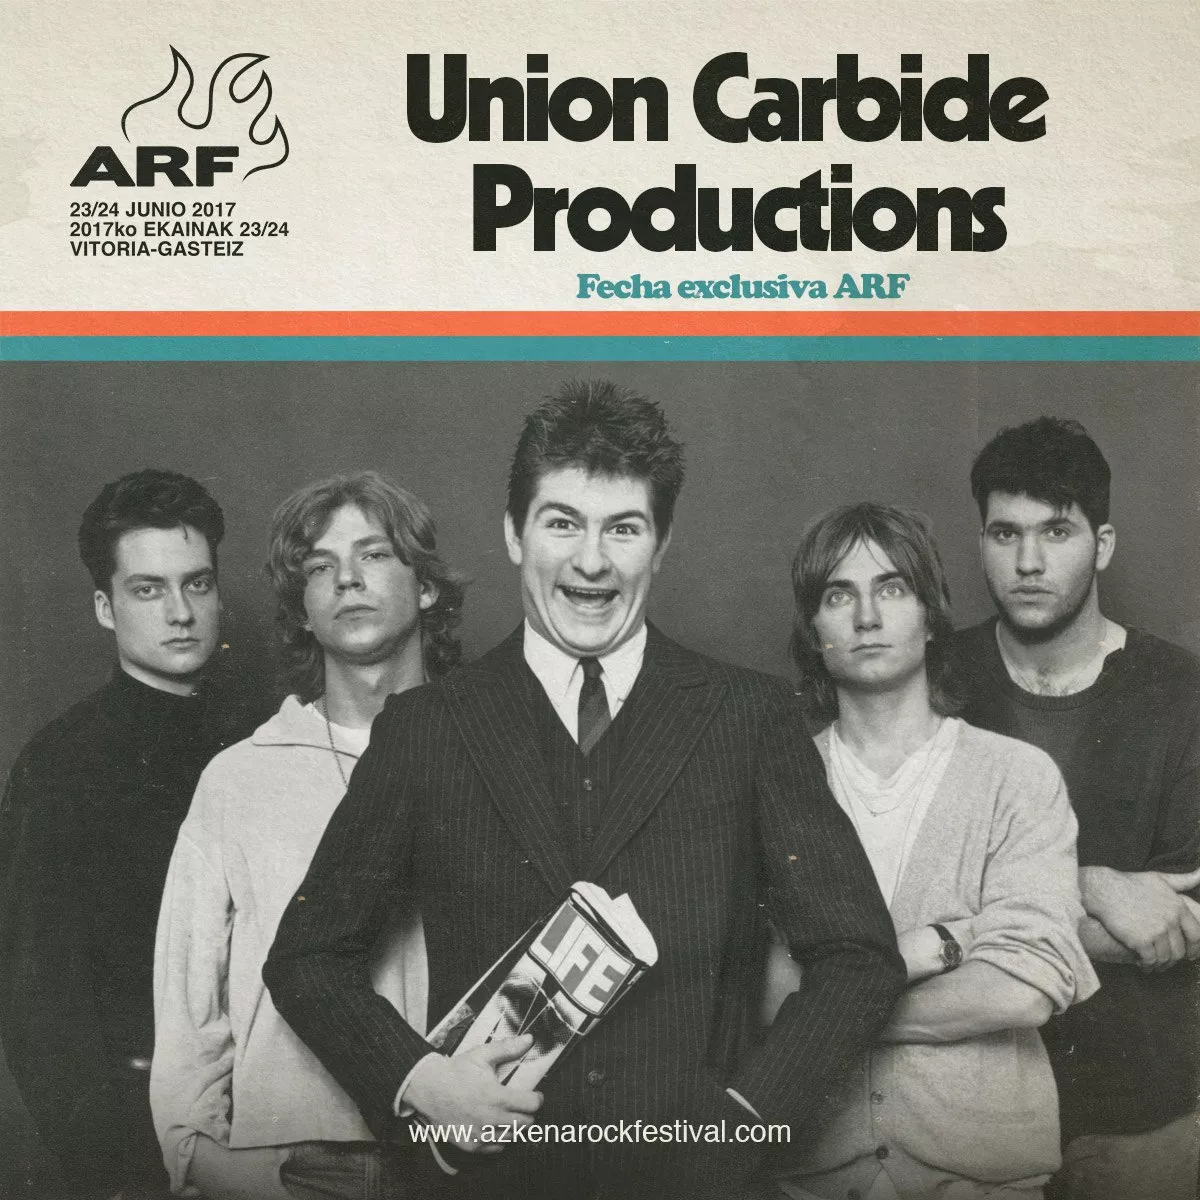 Union Carbide Productions överraskade med spontangig